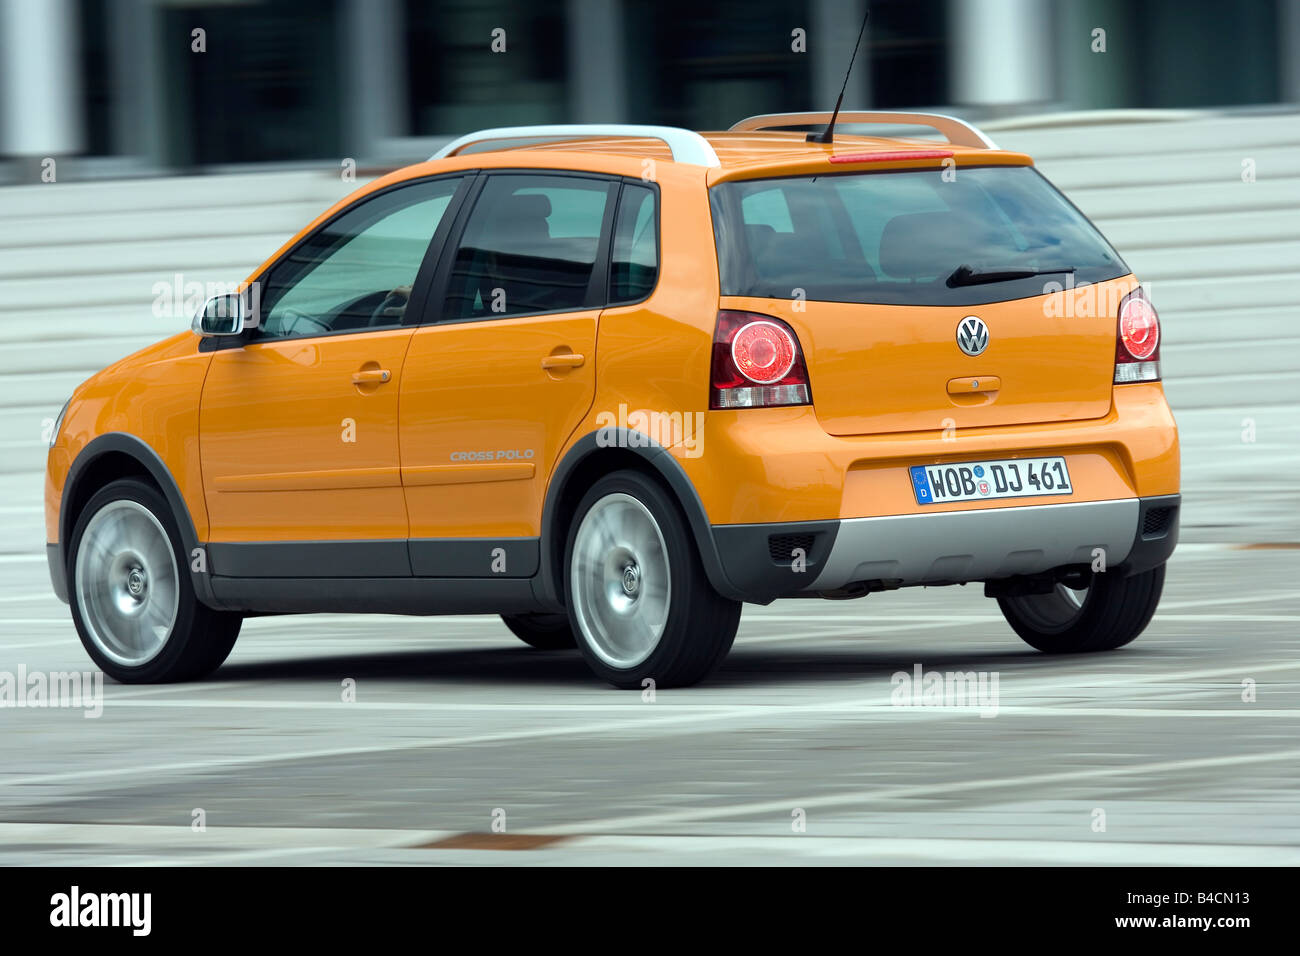 VW Volkswagen Polo trasversale 1.4 TDI, modello anno 2006-, arancione , guida, diagonale dal retro, vista posteriore, Città Foto Stock